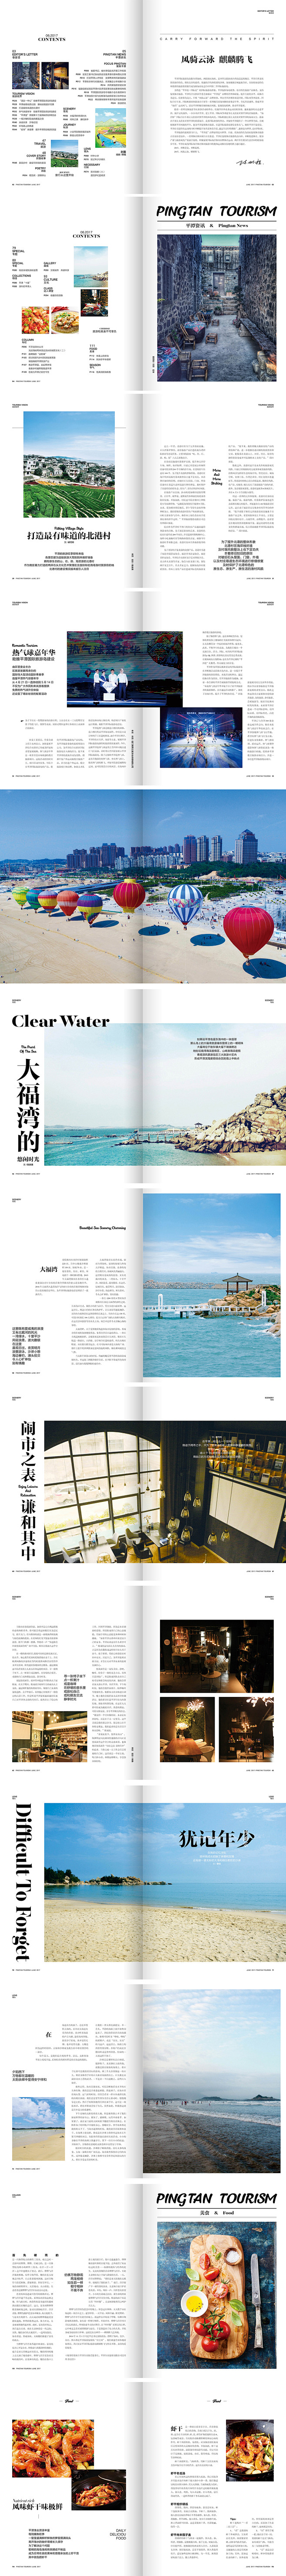 第11期平潭旅游杂志内页排版